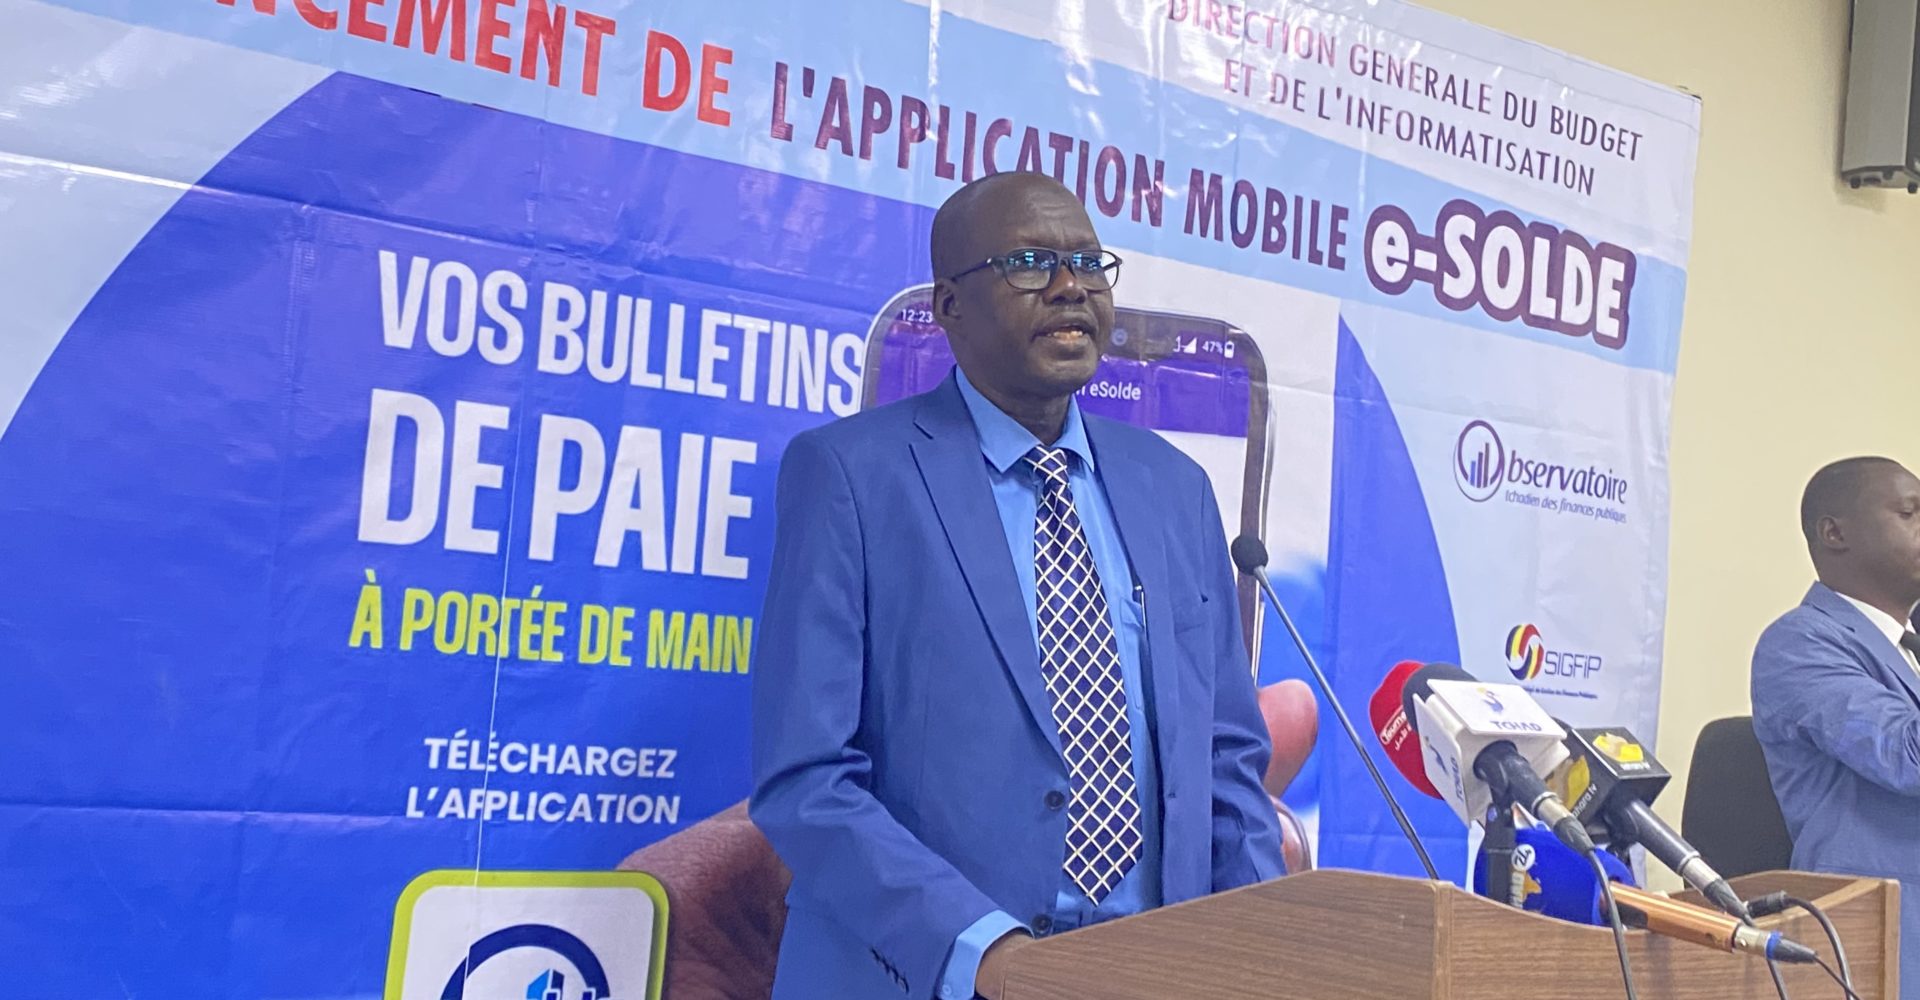 Tchad : Lancement  de l’application e-solde pour les services financiers 1